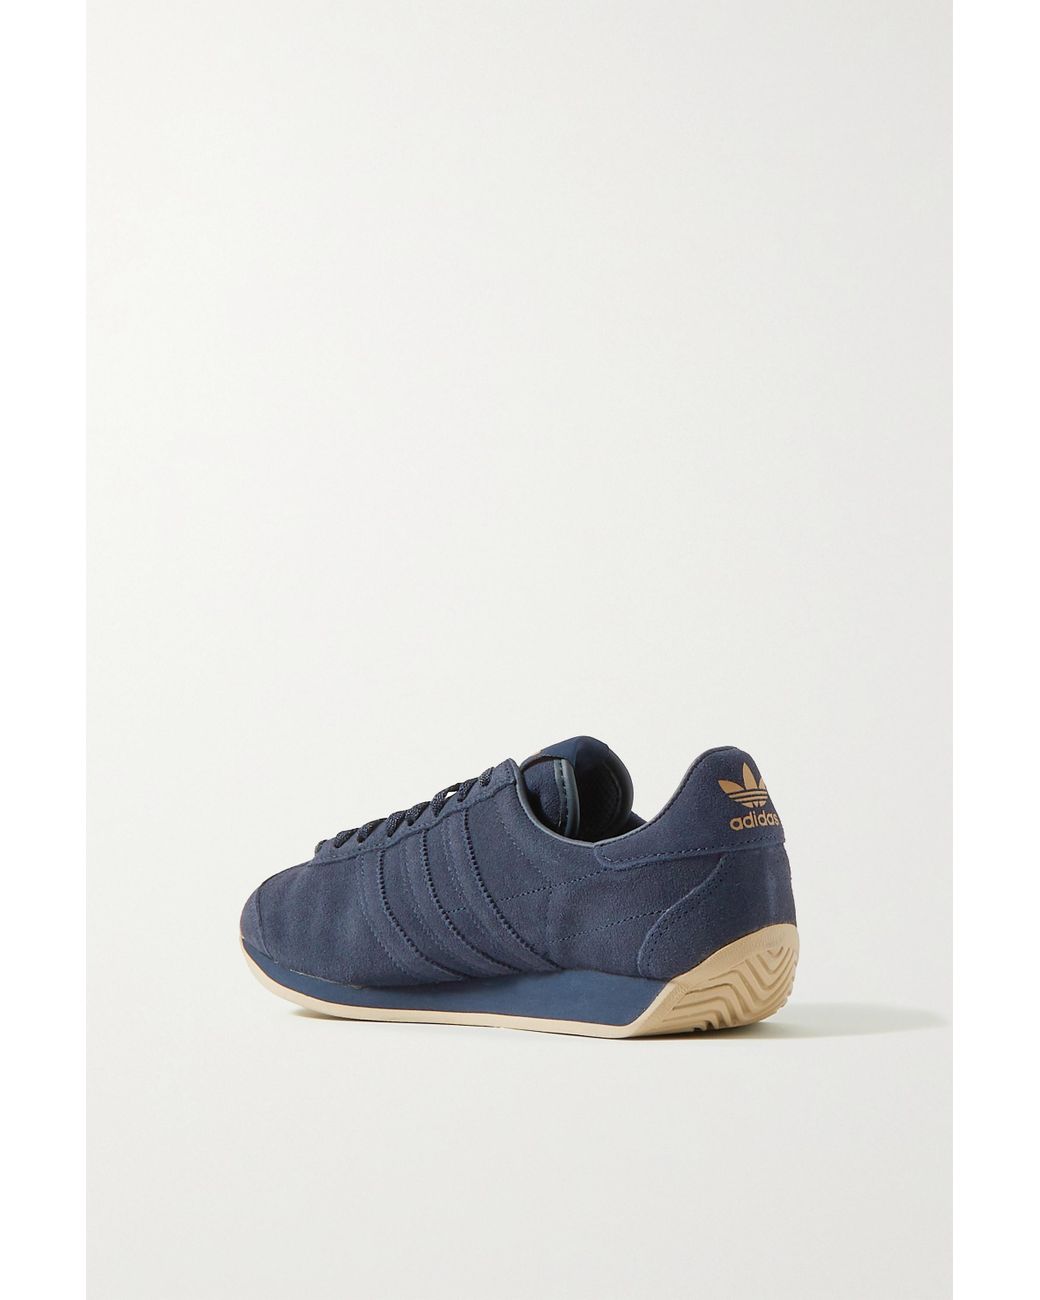 Khaite Adidas Originals Suede Sneakers in Blue | Lyst